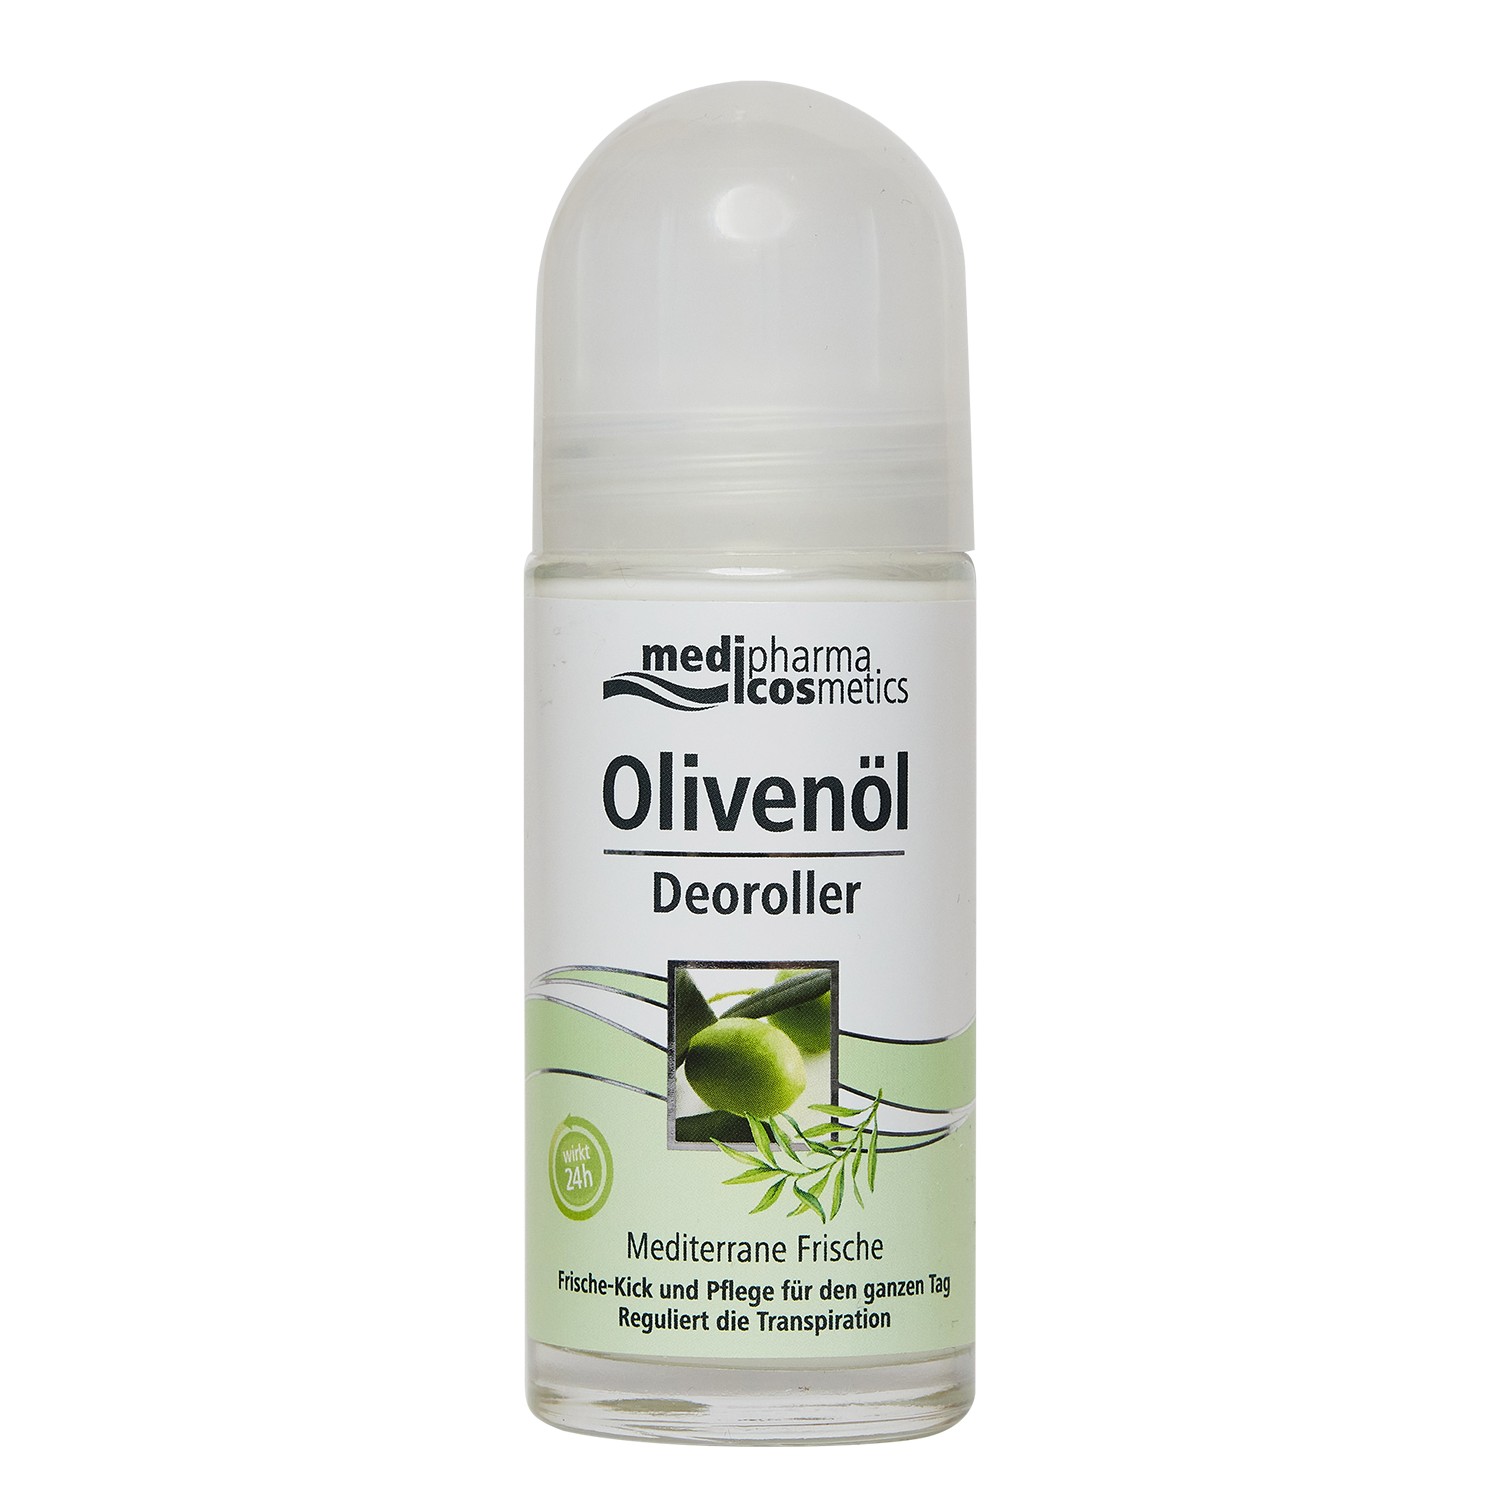 Medipharma Cosmetics Роликовый дезодорант Olivenol Средизем